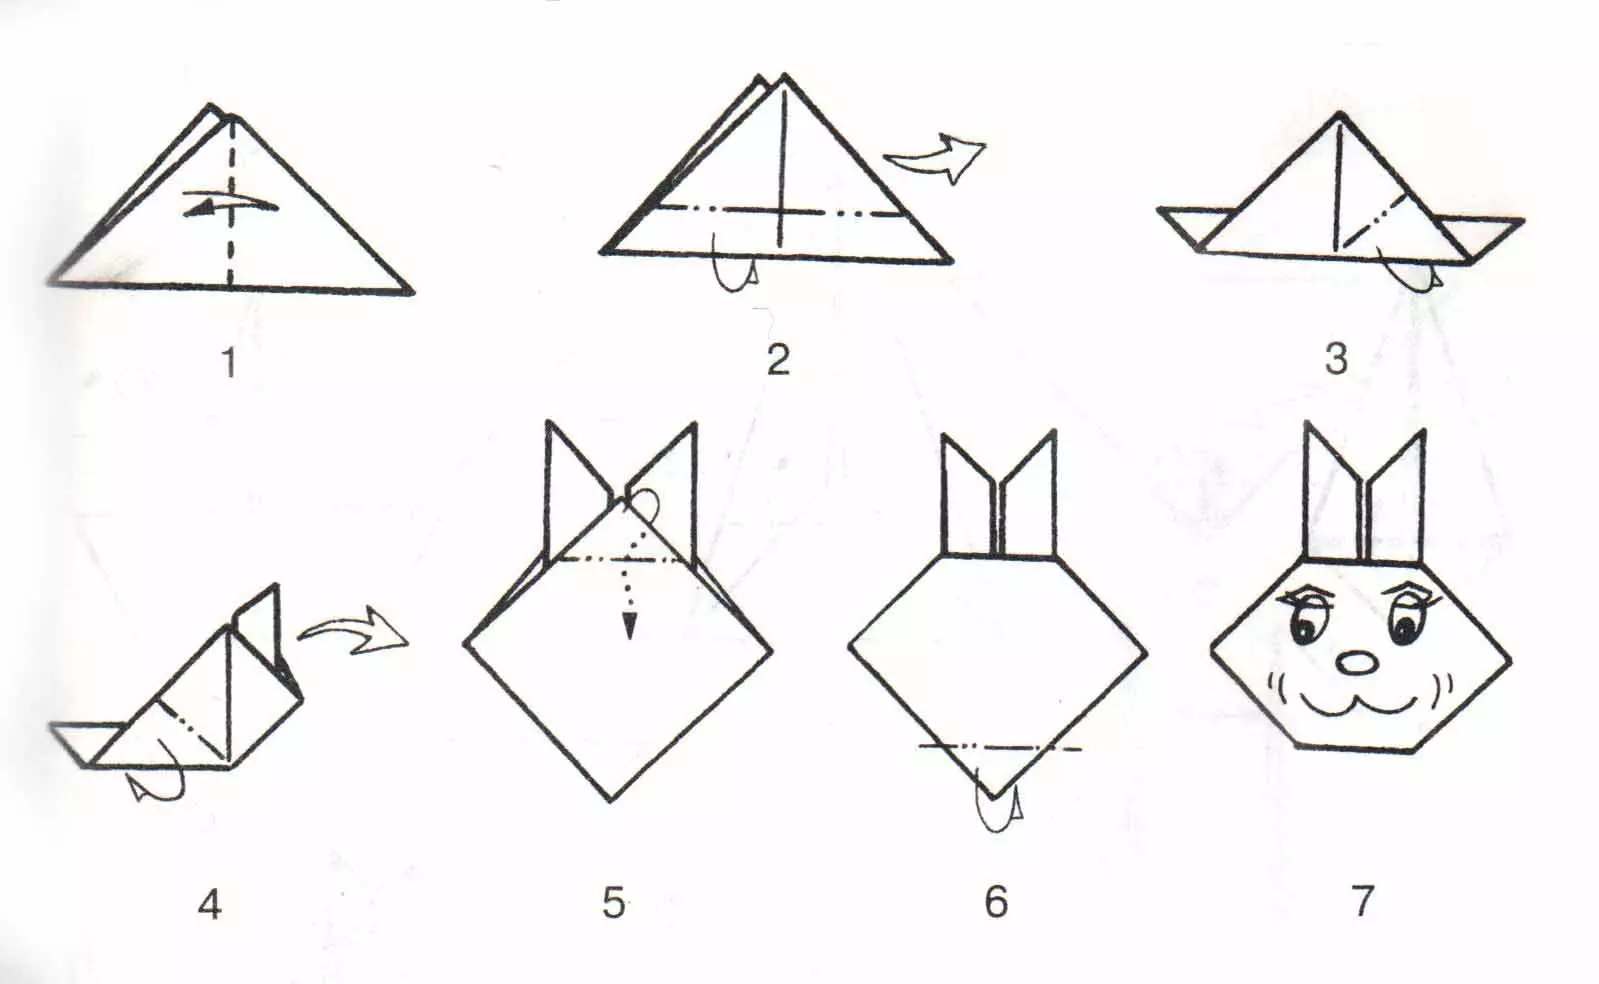 အဖြူရောင်စက္ကူမှ origami: 4-9 နှင့် 12-13 နှစ်အရွယ်ကလေးများအတွက်အလင်းရောင် origami, Light Origami, အစပြုသူများအတွက်လှပသောရိုးရှင်းသောလက်မှုပညာ။ စာရွက်ကိန်းဂဏန်းများ၏ phased အစီအစဉ်များ 26951_12